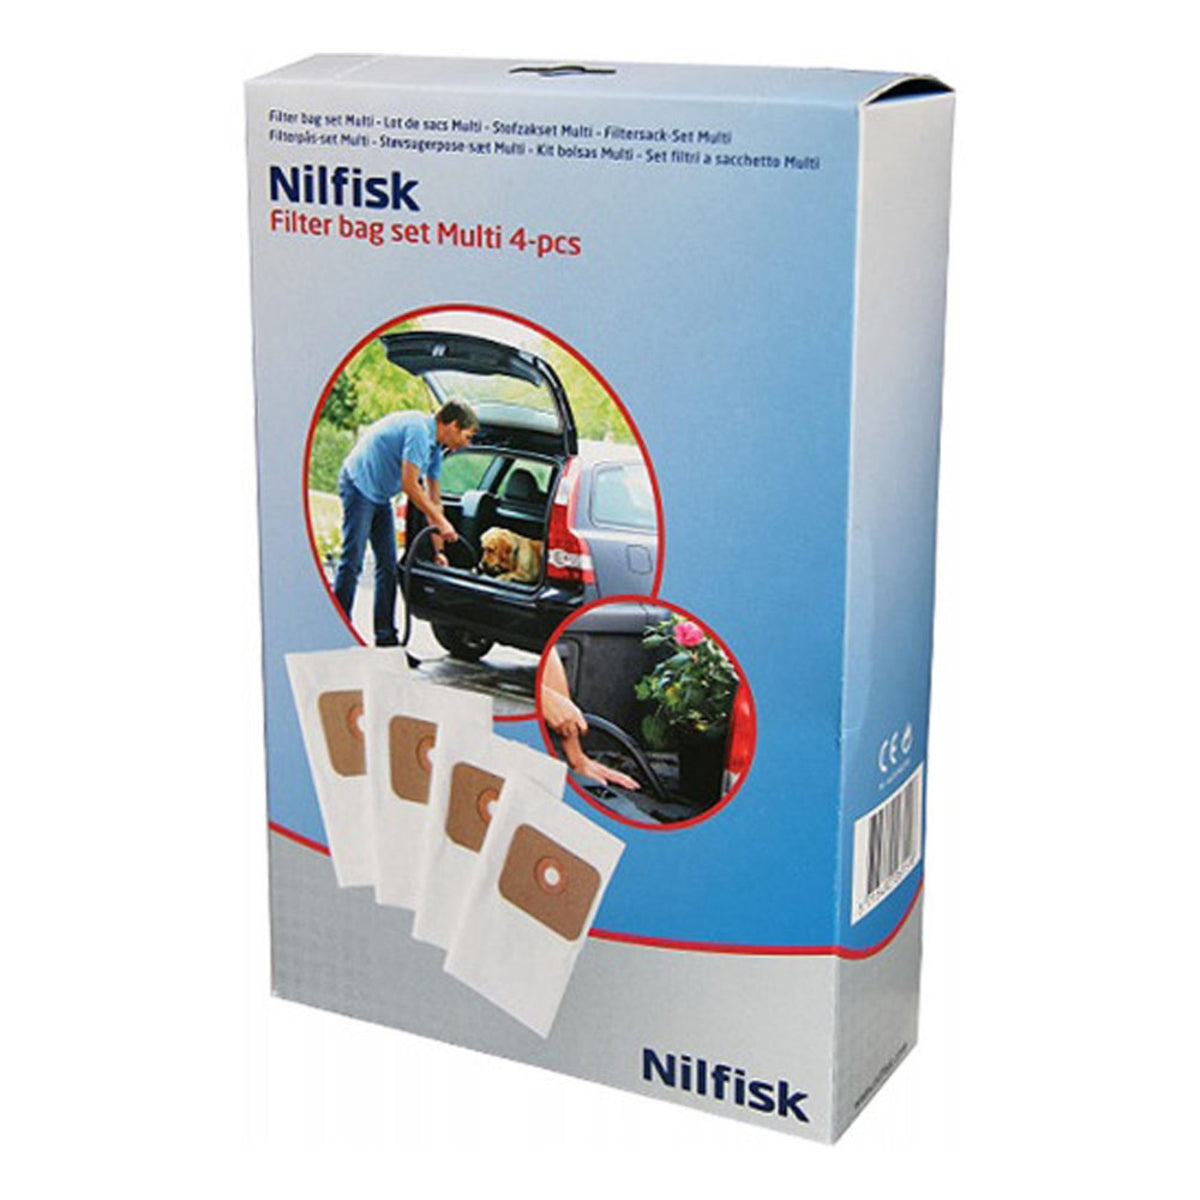 Bolsas aspirador Nilfisk Business 4.5L - 5 unidades - 82222800